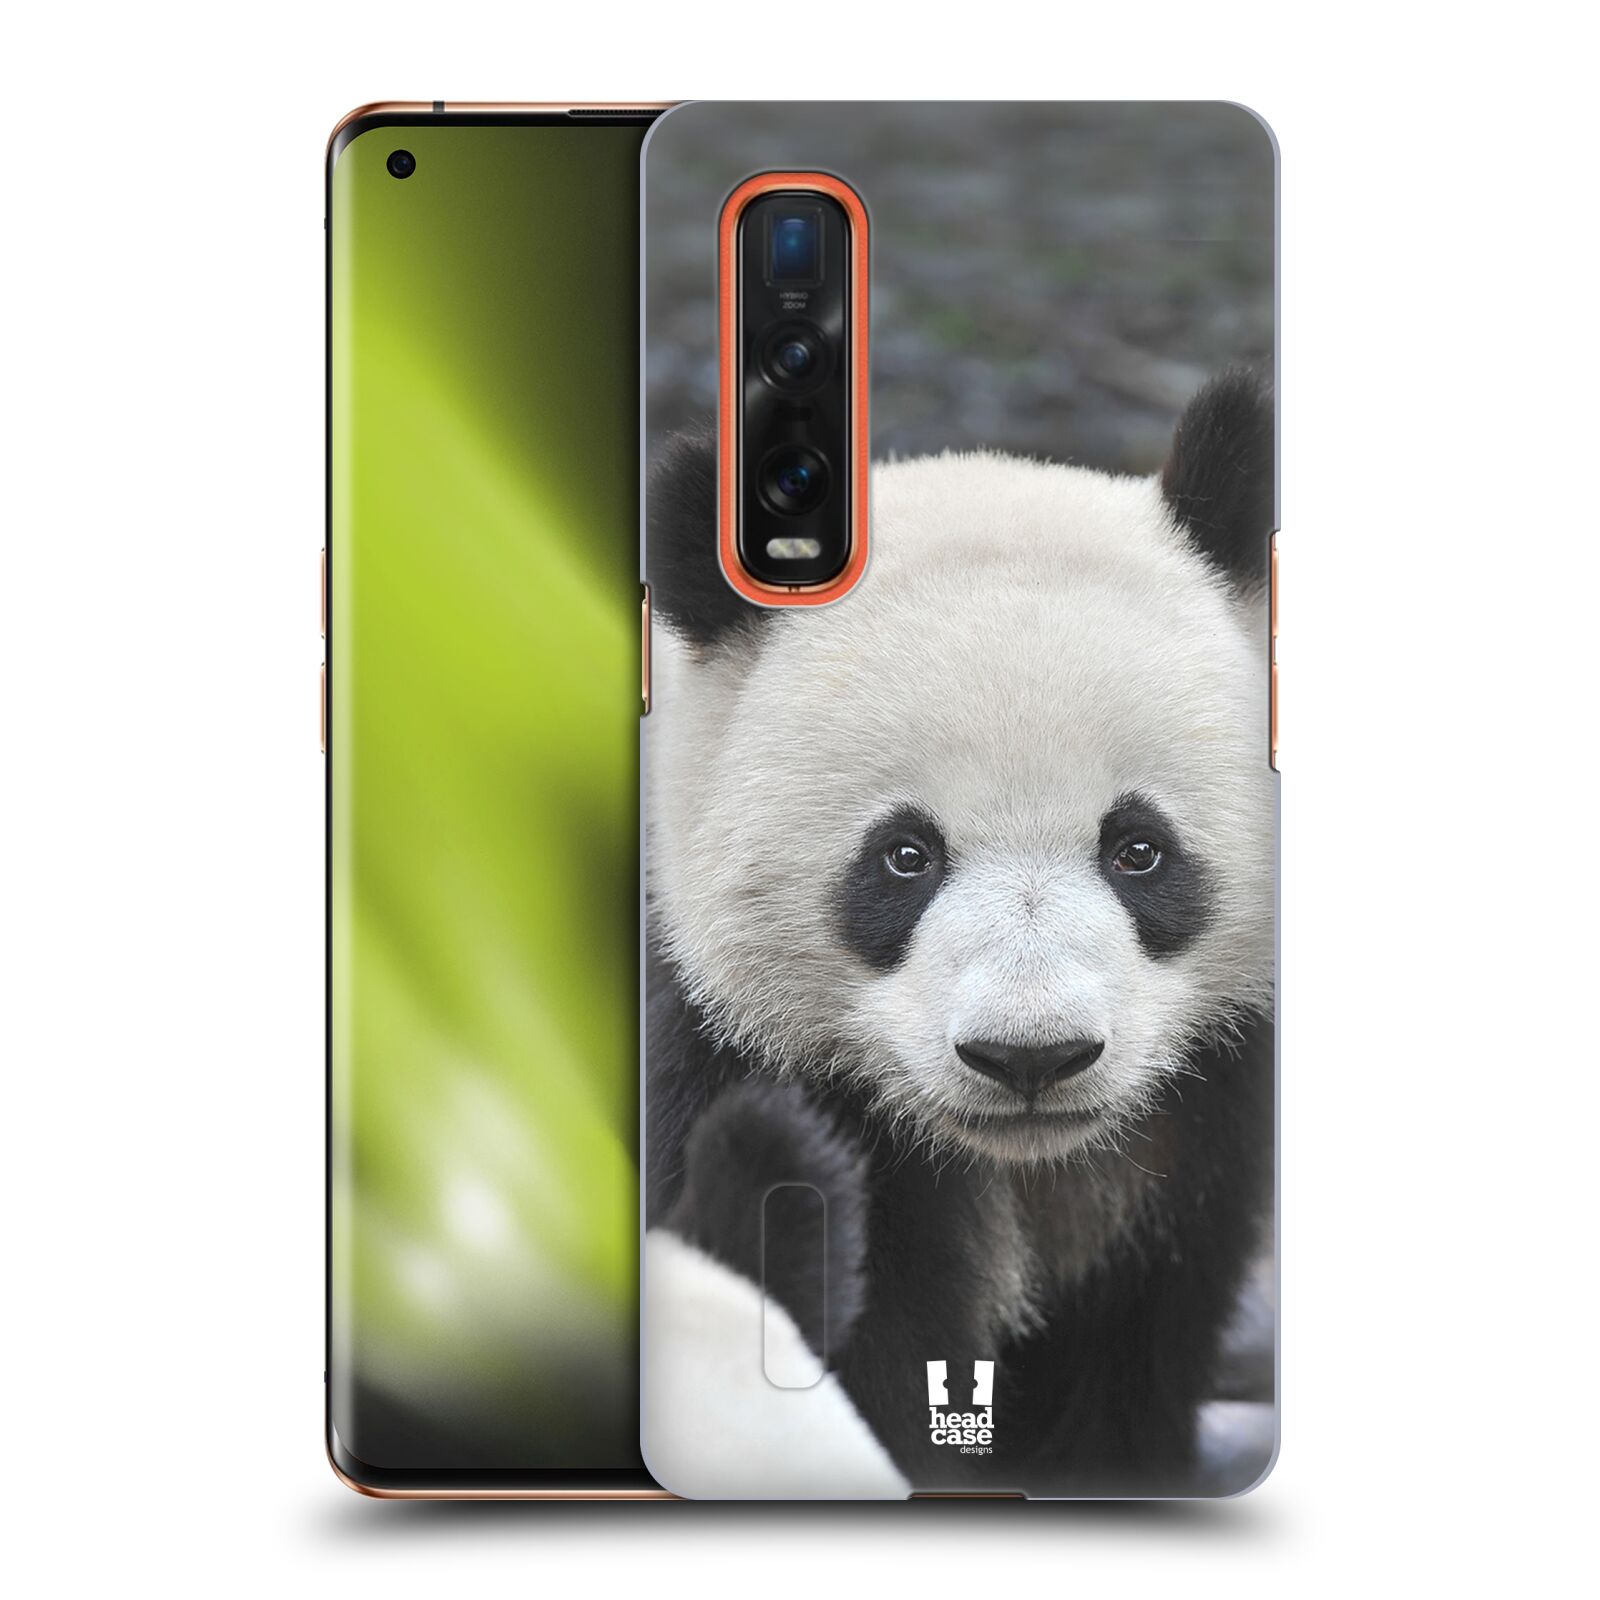 Zadní obal pro mobil Oppo Find X2 PRO - HEAD CASE - Svět zvířat medvěd panda